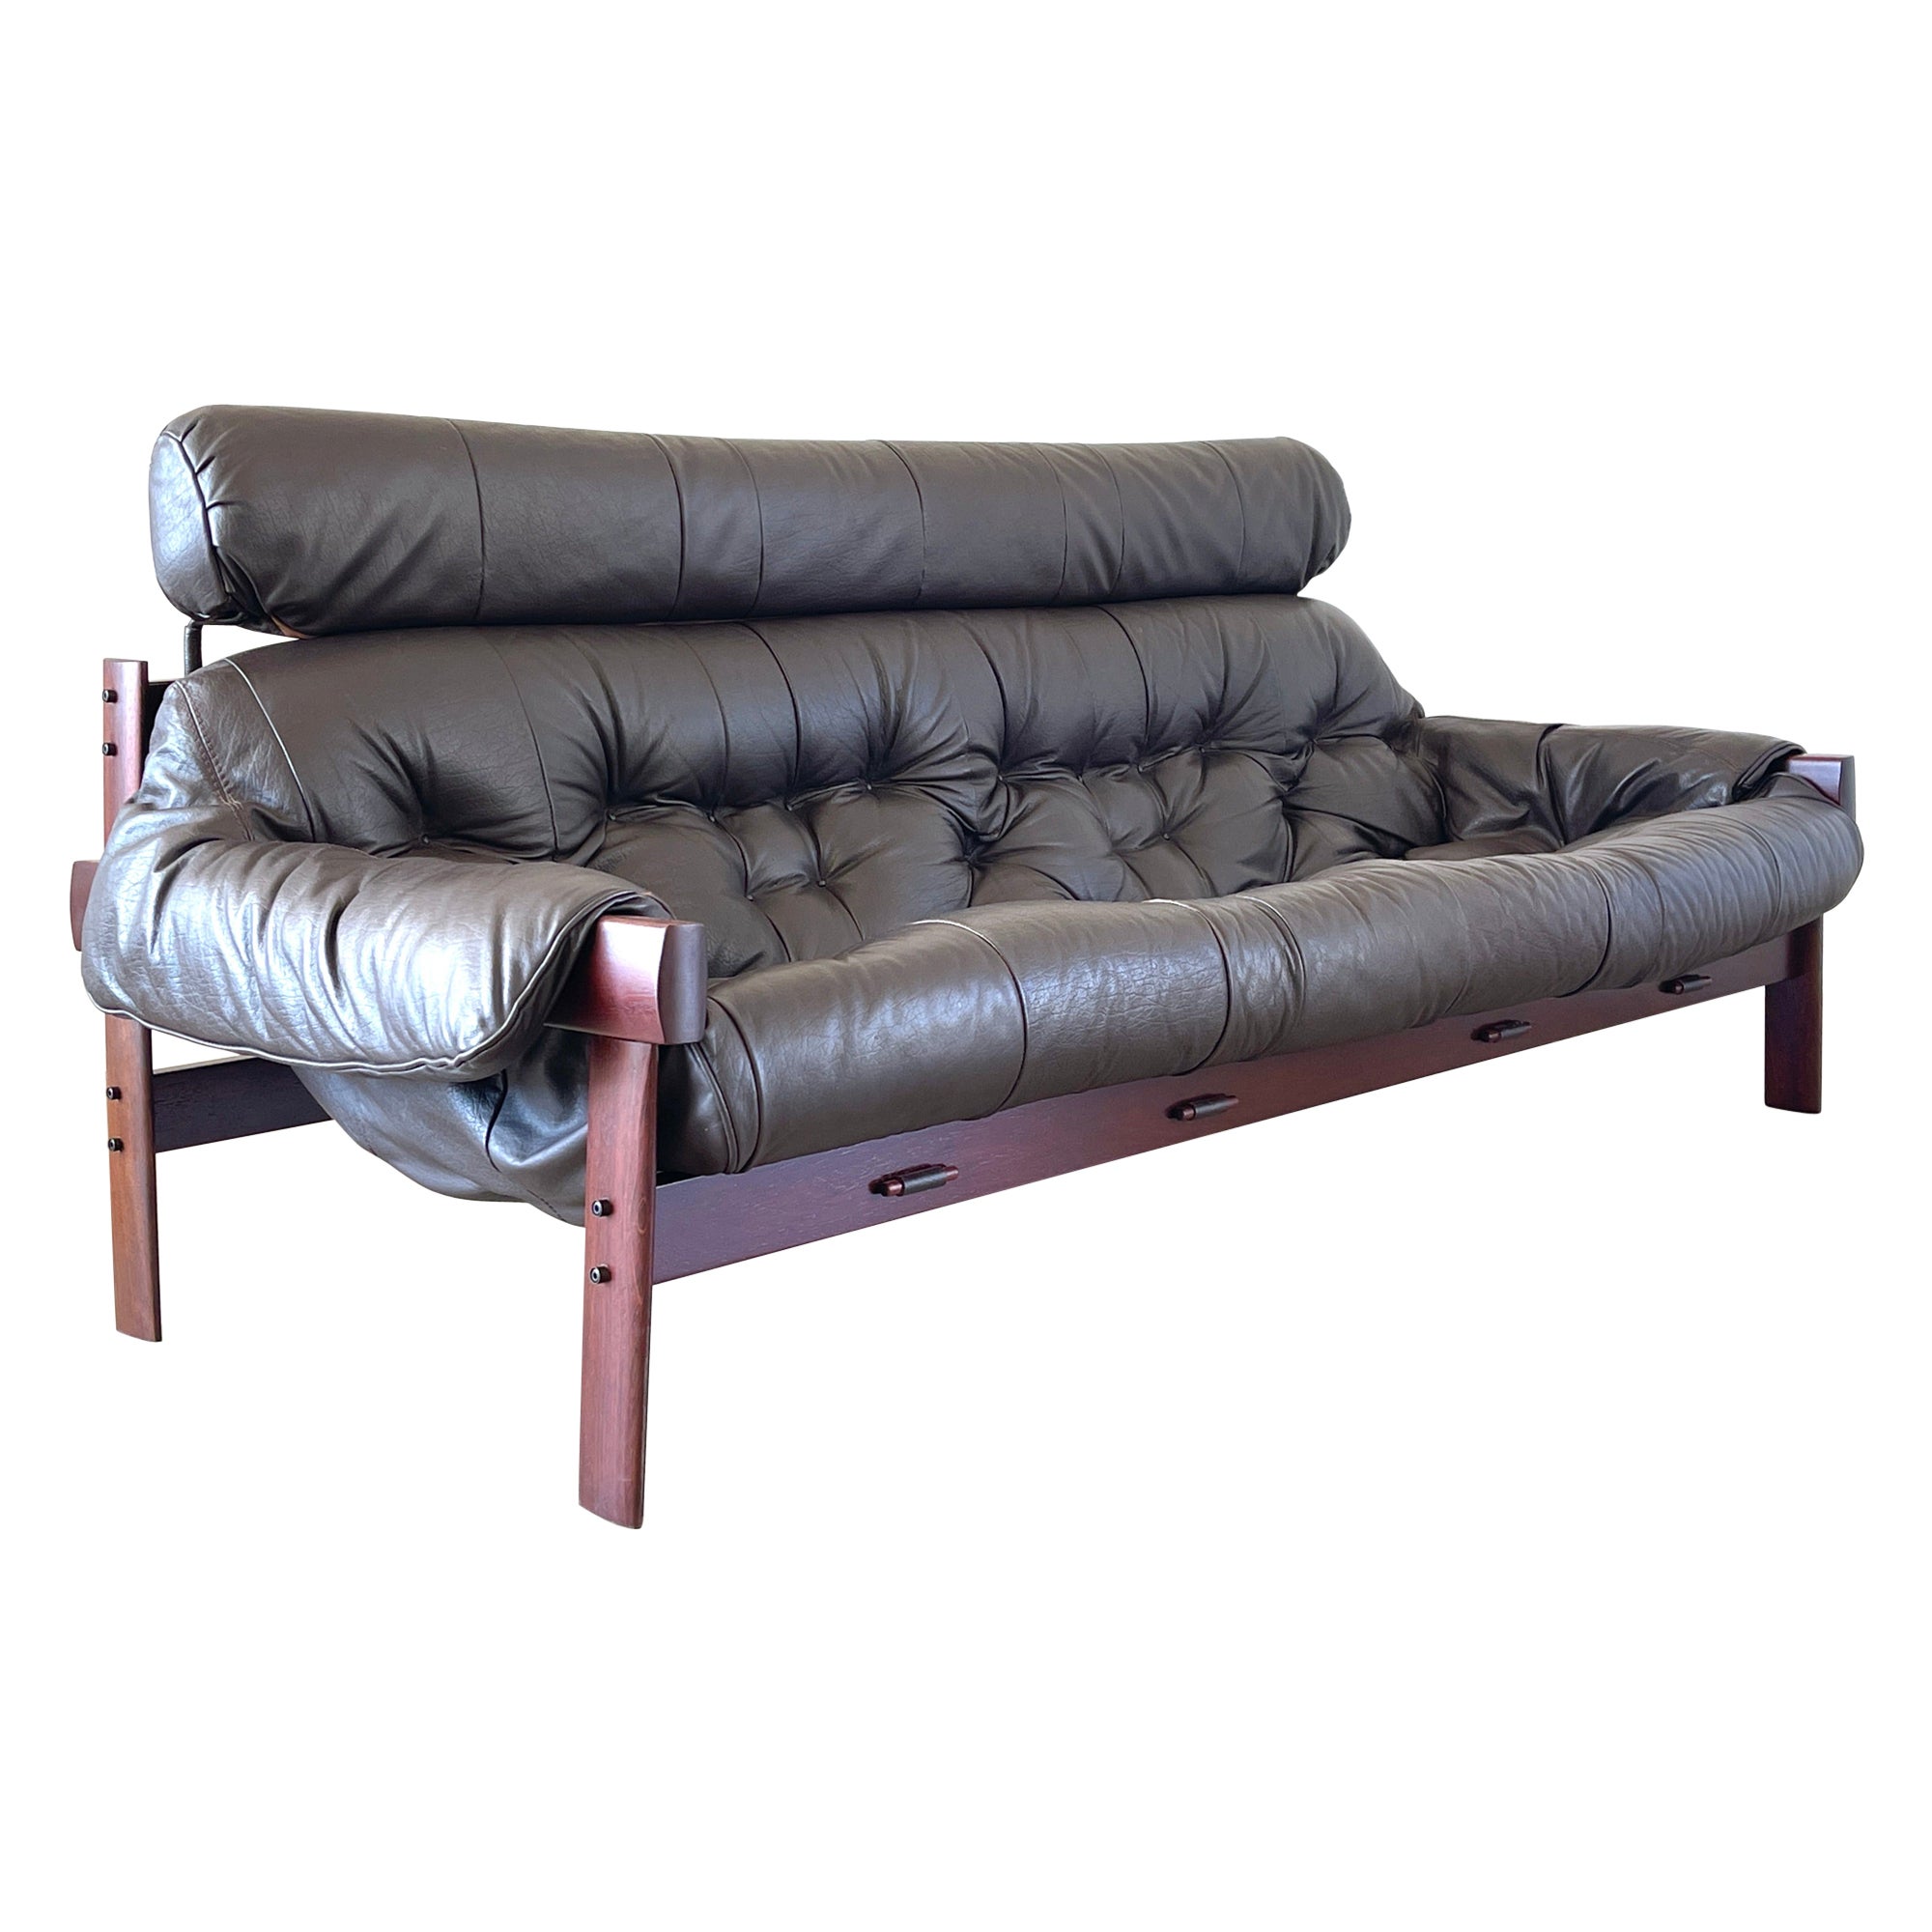  Percival Lafer Sofa For Sale